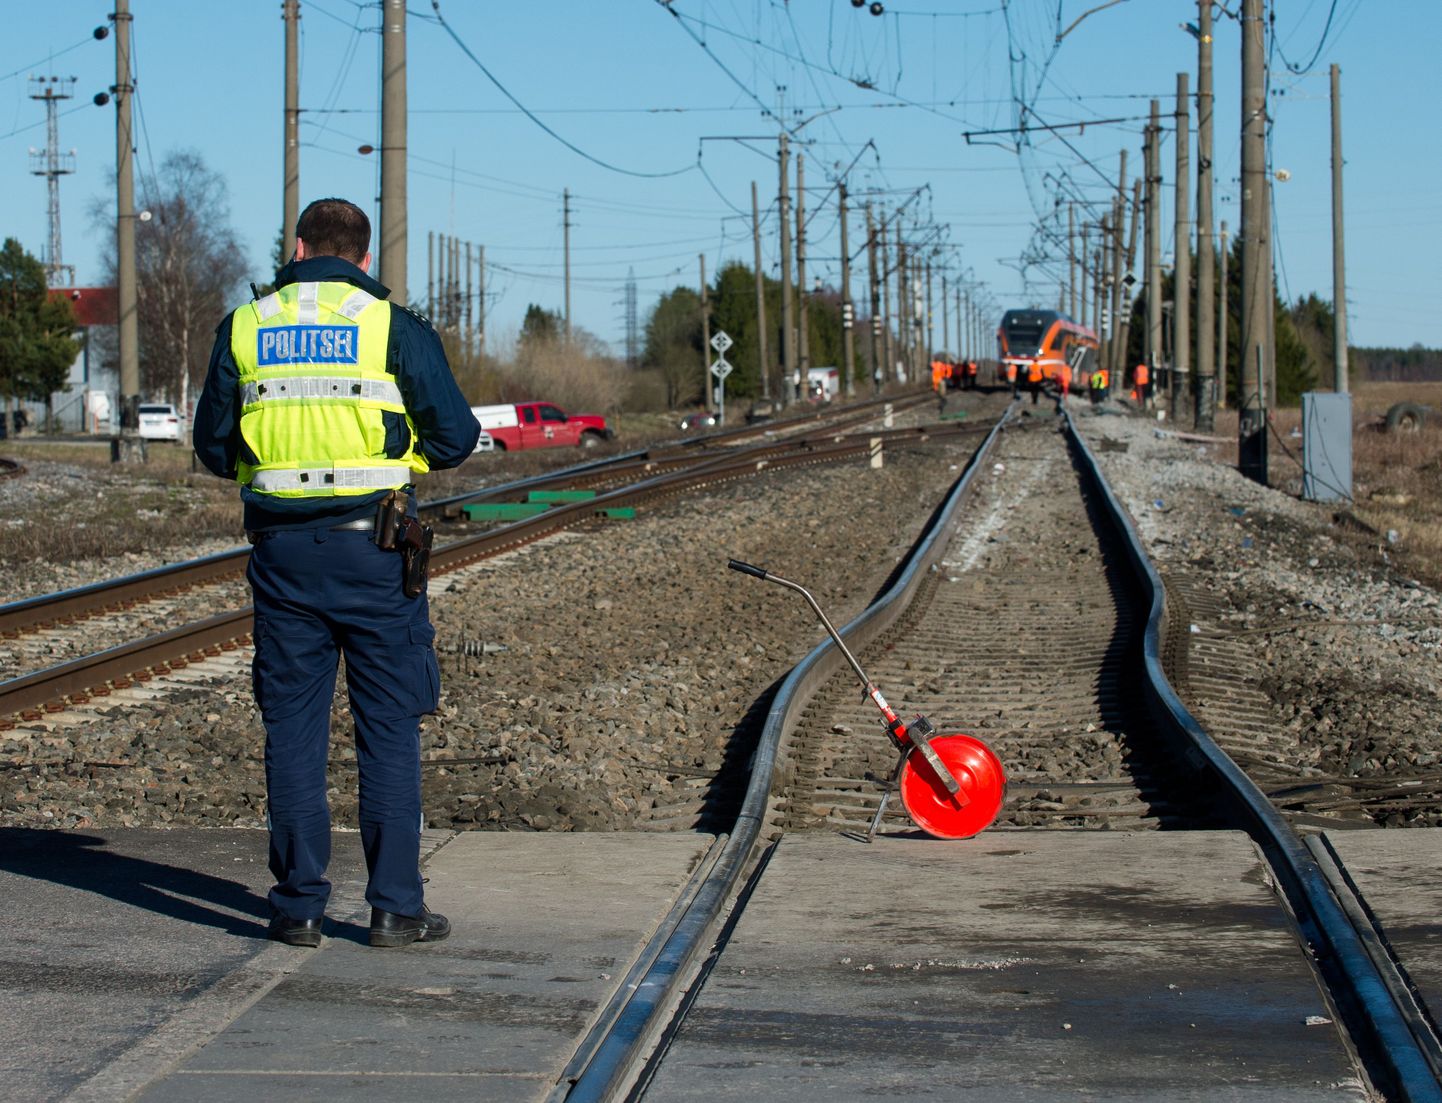 Harjumaal Raasiku raudteejaama juures juhtus kahe kannatanud õnnetus.